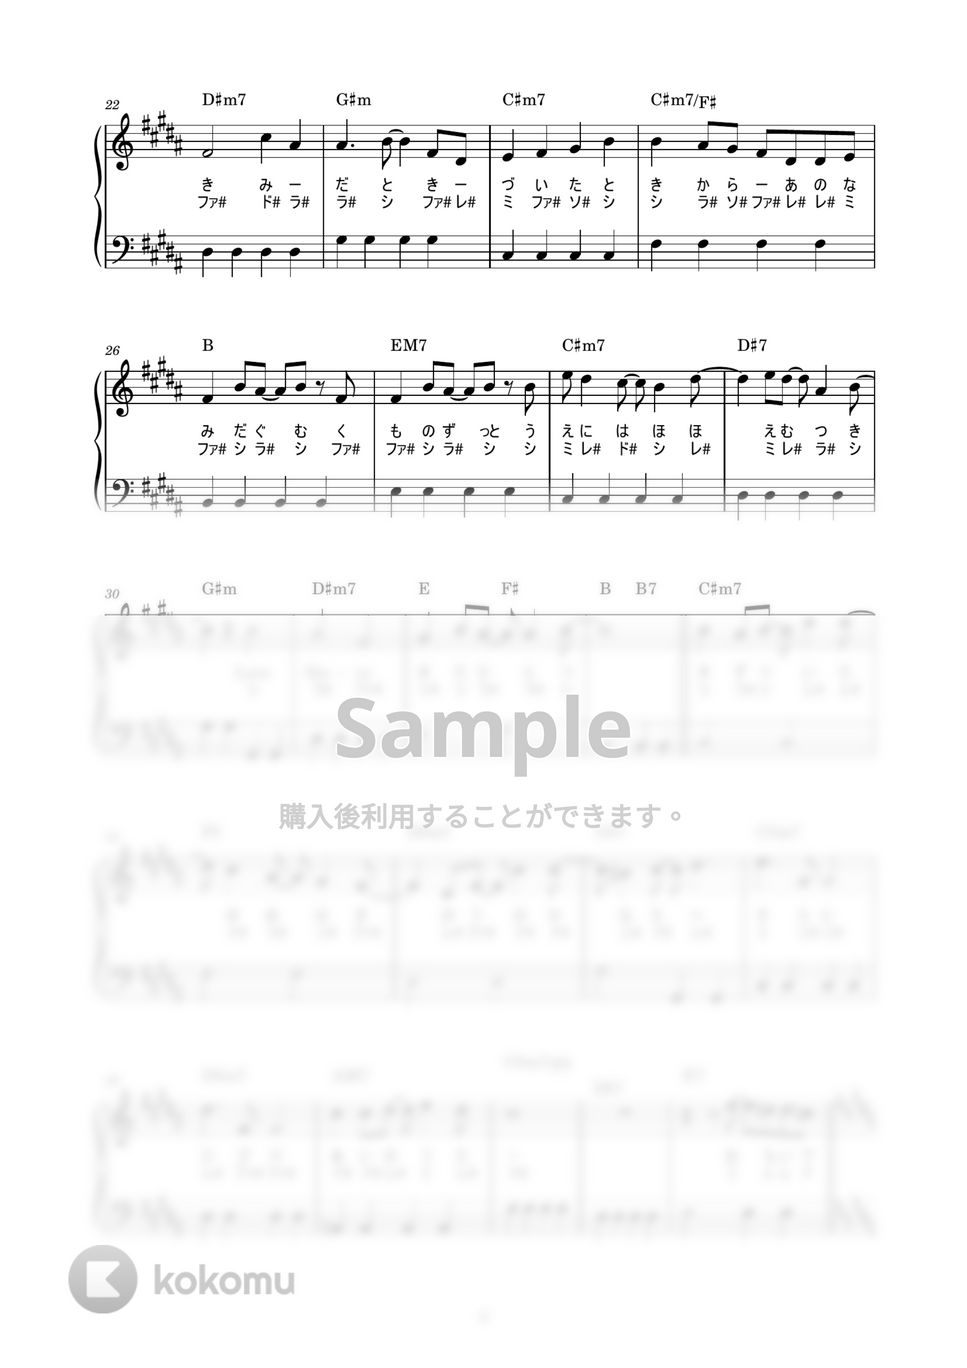 嵐 - Love so sweet (かんたん / 歌詞付き / ドレミ付き / 初心者) by piano.tokyo